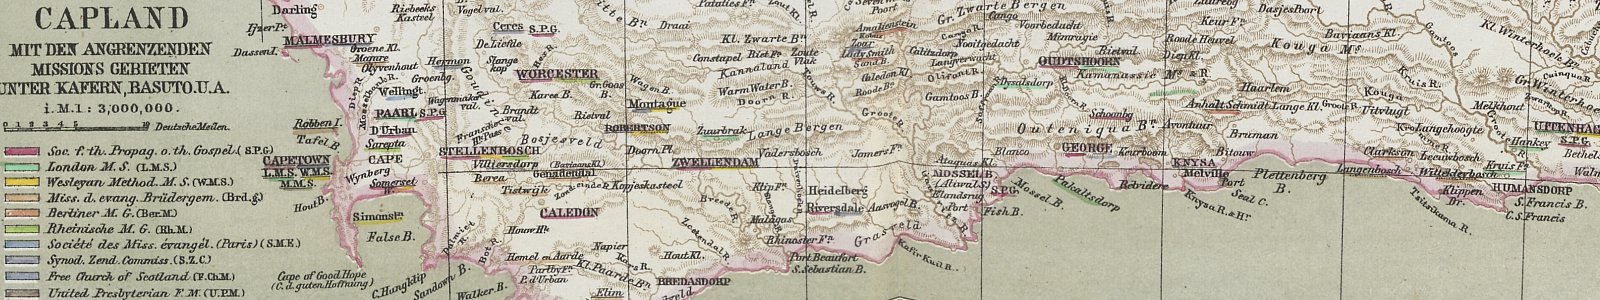 'Das Capland [...]'. In: 'Allgemeiner Missions-Atlas', 1867